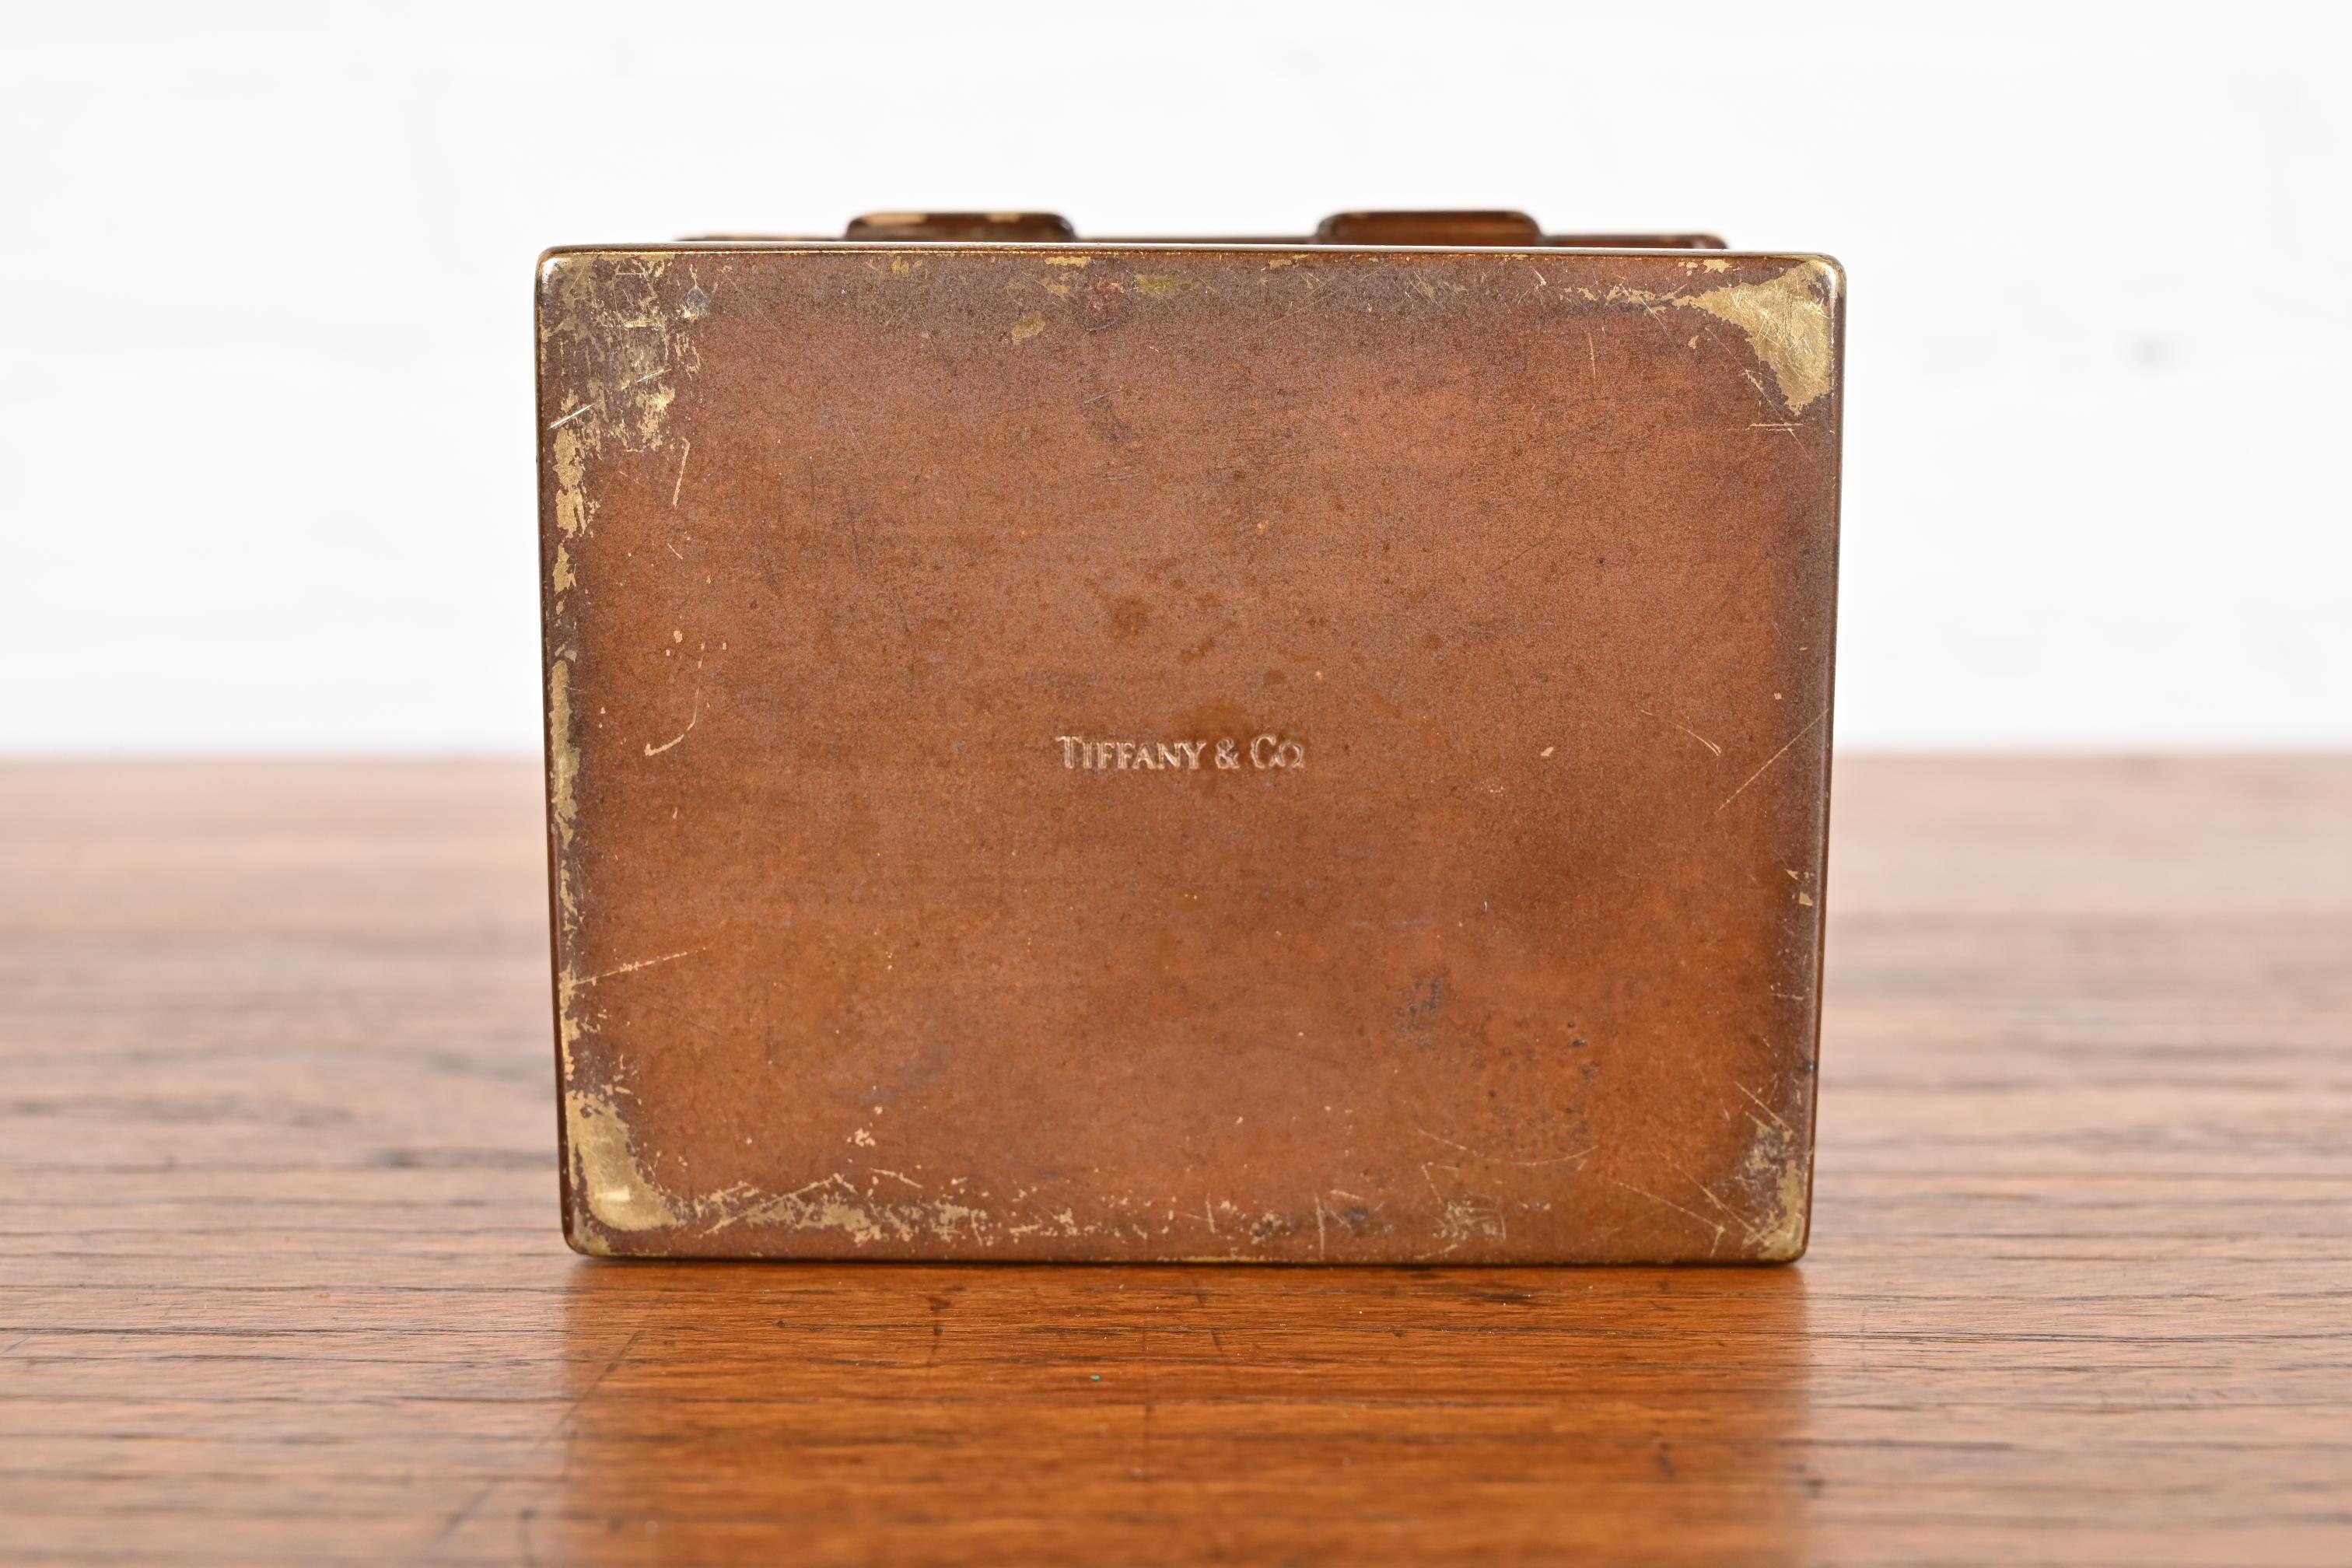 Tiffany & Co. New York Decorative Copper Desk Box or Cigarette Box 5